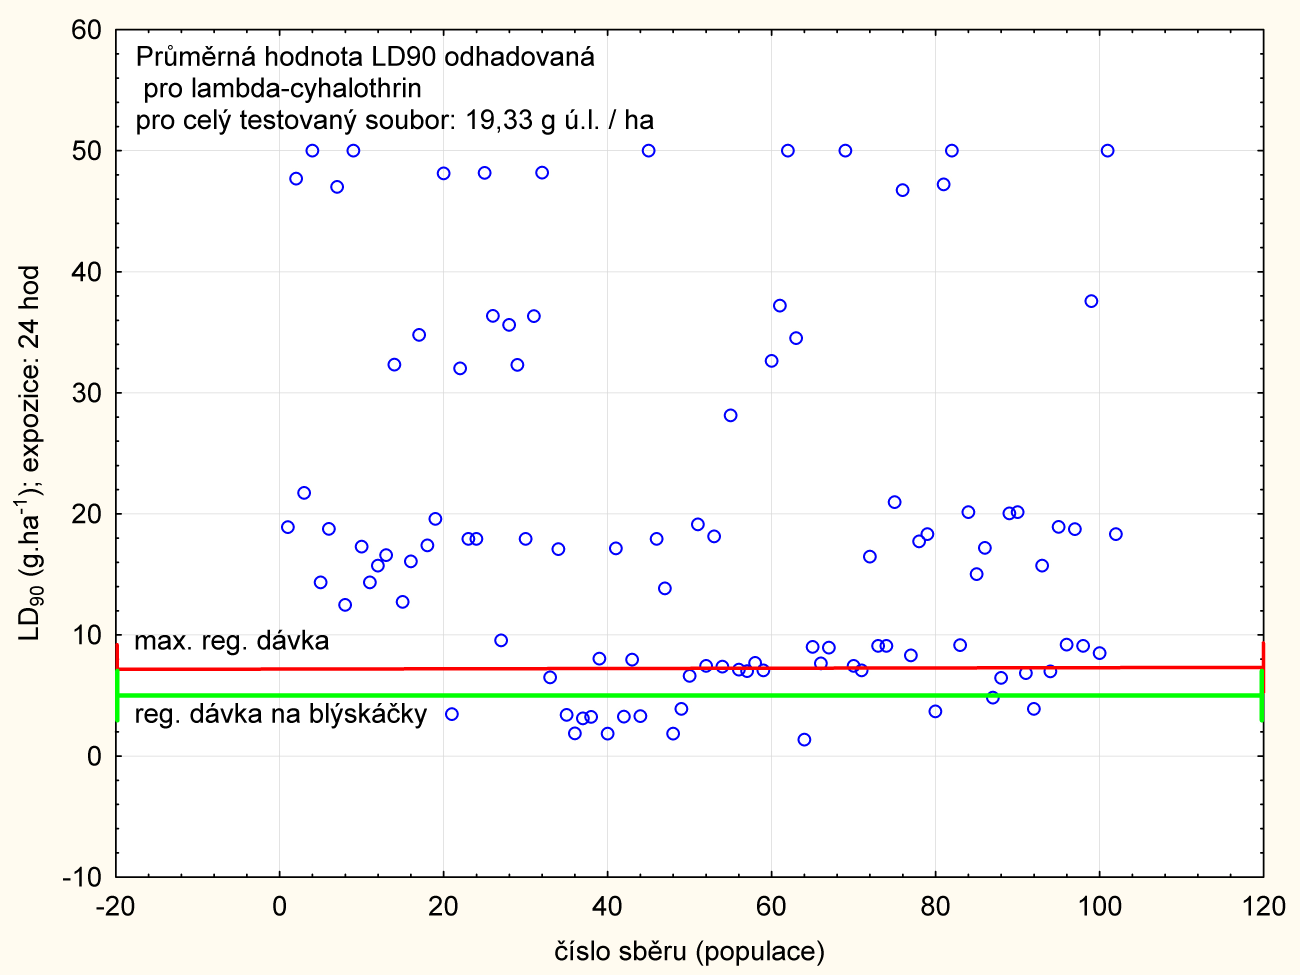 horizontální čára vymezuje maximální registrovanou dávku pro lambda-cyhalothrin v řepce ozimé v ČR (7,5 g ú.l./ha).